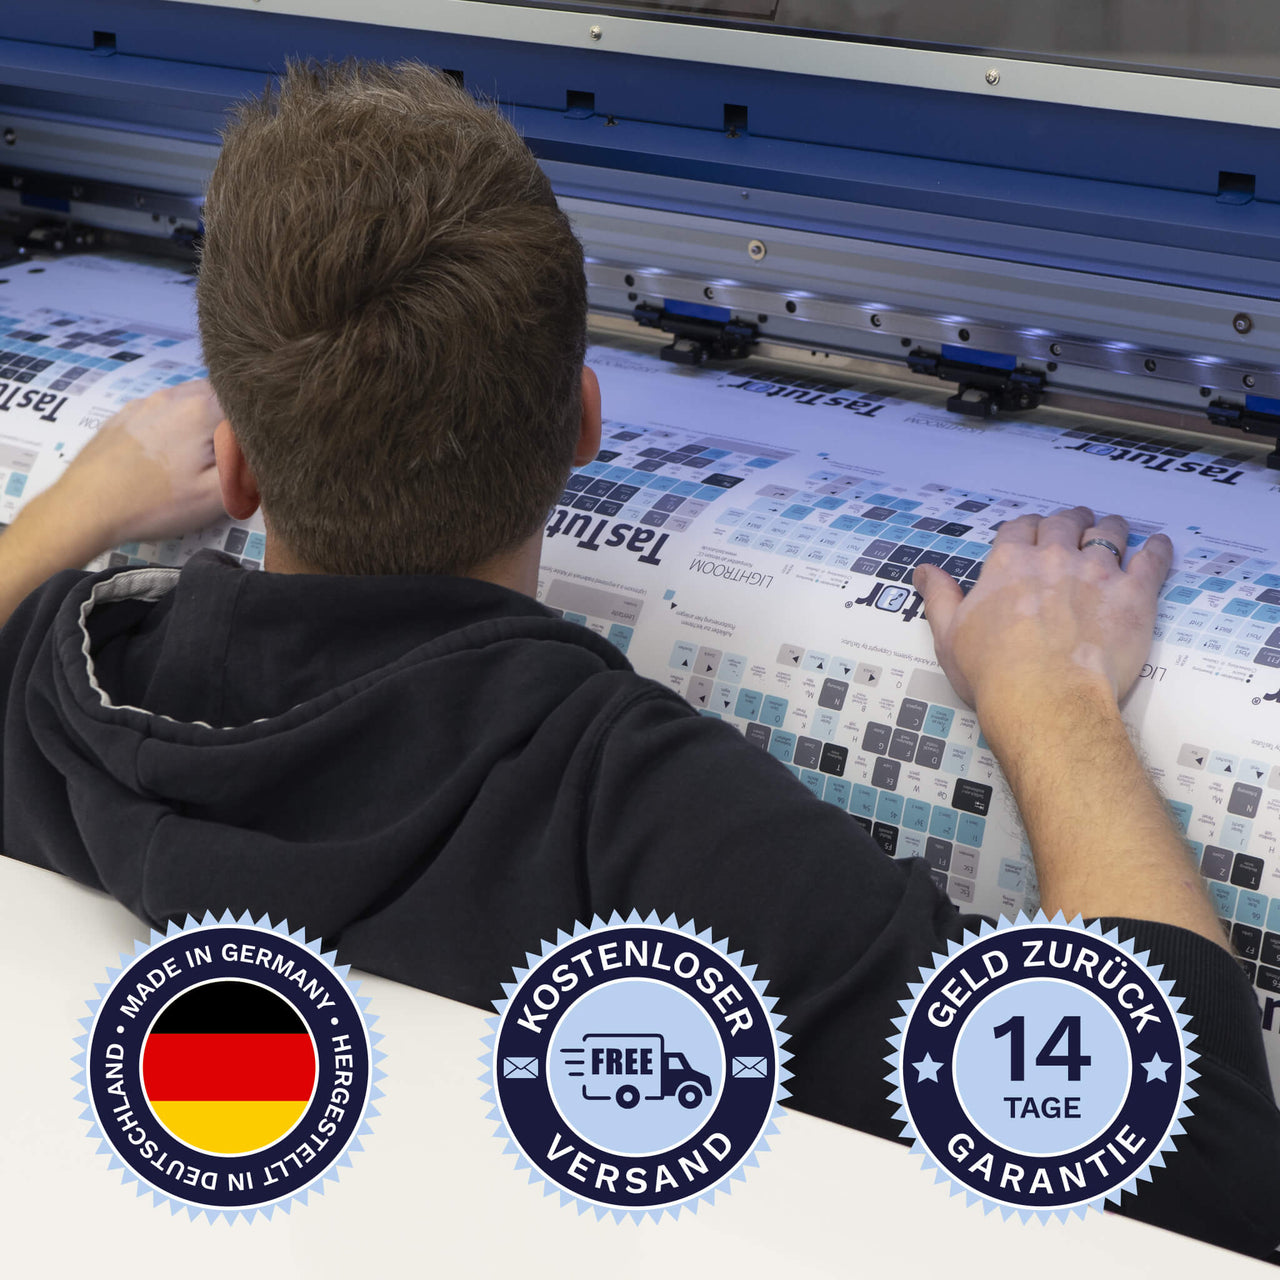 Griechische Tastaturaufkleber werden in Deutschland hergestellt. Der Versand ist kostenlos und wir gewährleisten 14 Tage Geld zurück Garantie | TasTutor